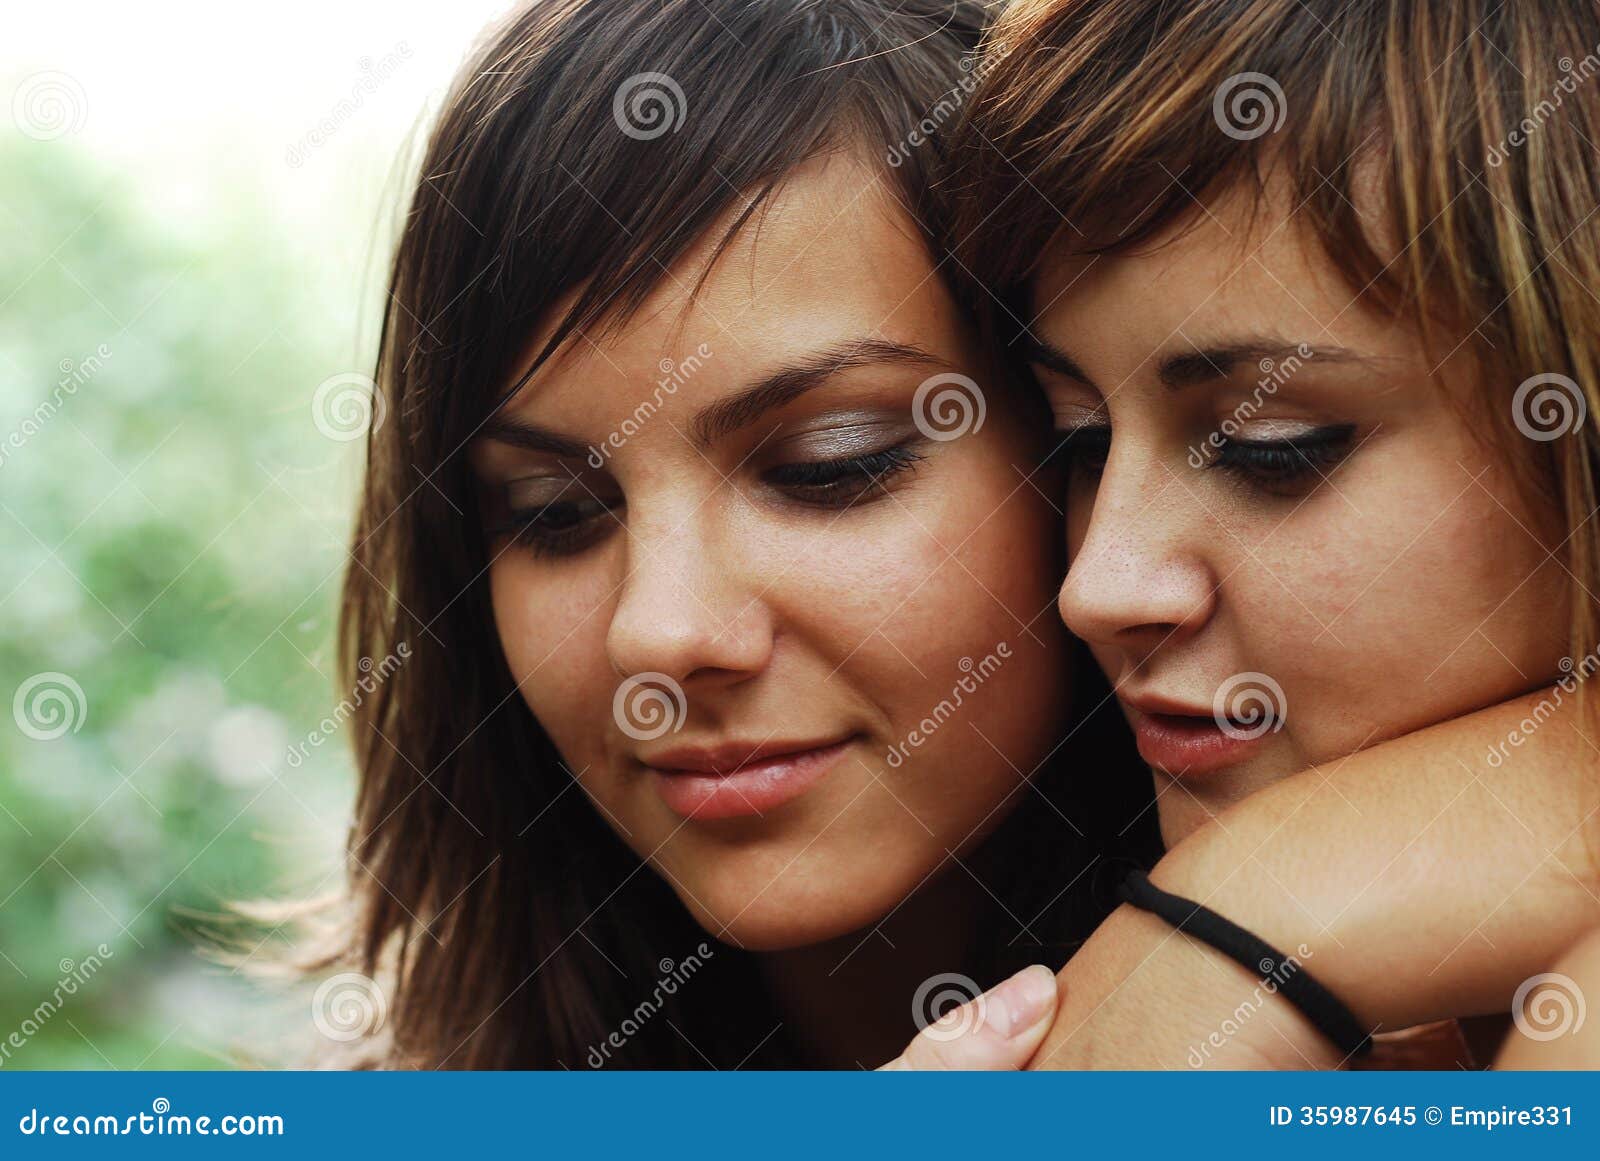 女同性恋者 库存图片. 图片 包括有 同性恋, 拥抱, 嬉戏, 年轻, 关系, 偶然, 言情, 女同性恋者 - 77306759